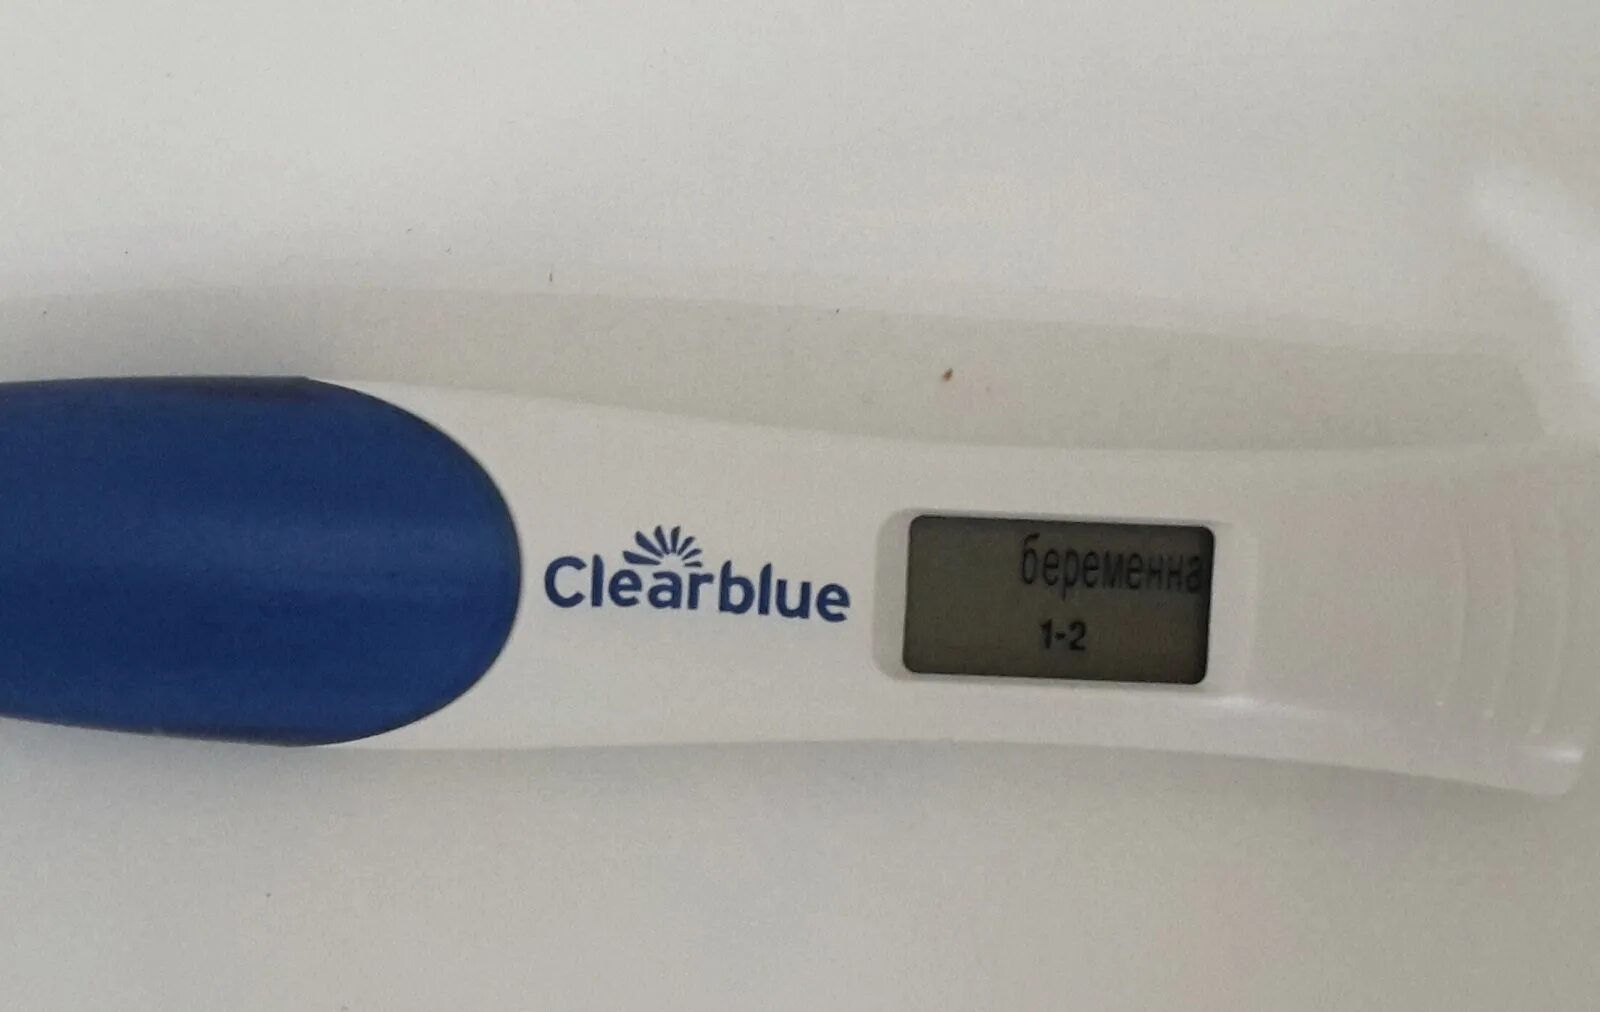 1 Цифровой тест на беременность. Электронный тест на беременность 1-2 недели беременности. Электронный тест на беременность 1 неделя беременности. Clearblue 1-2 недели.